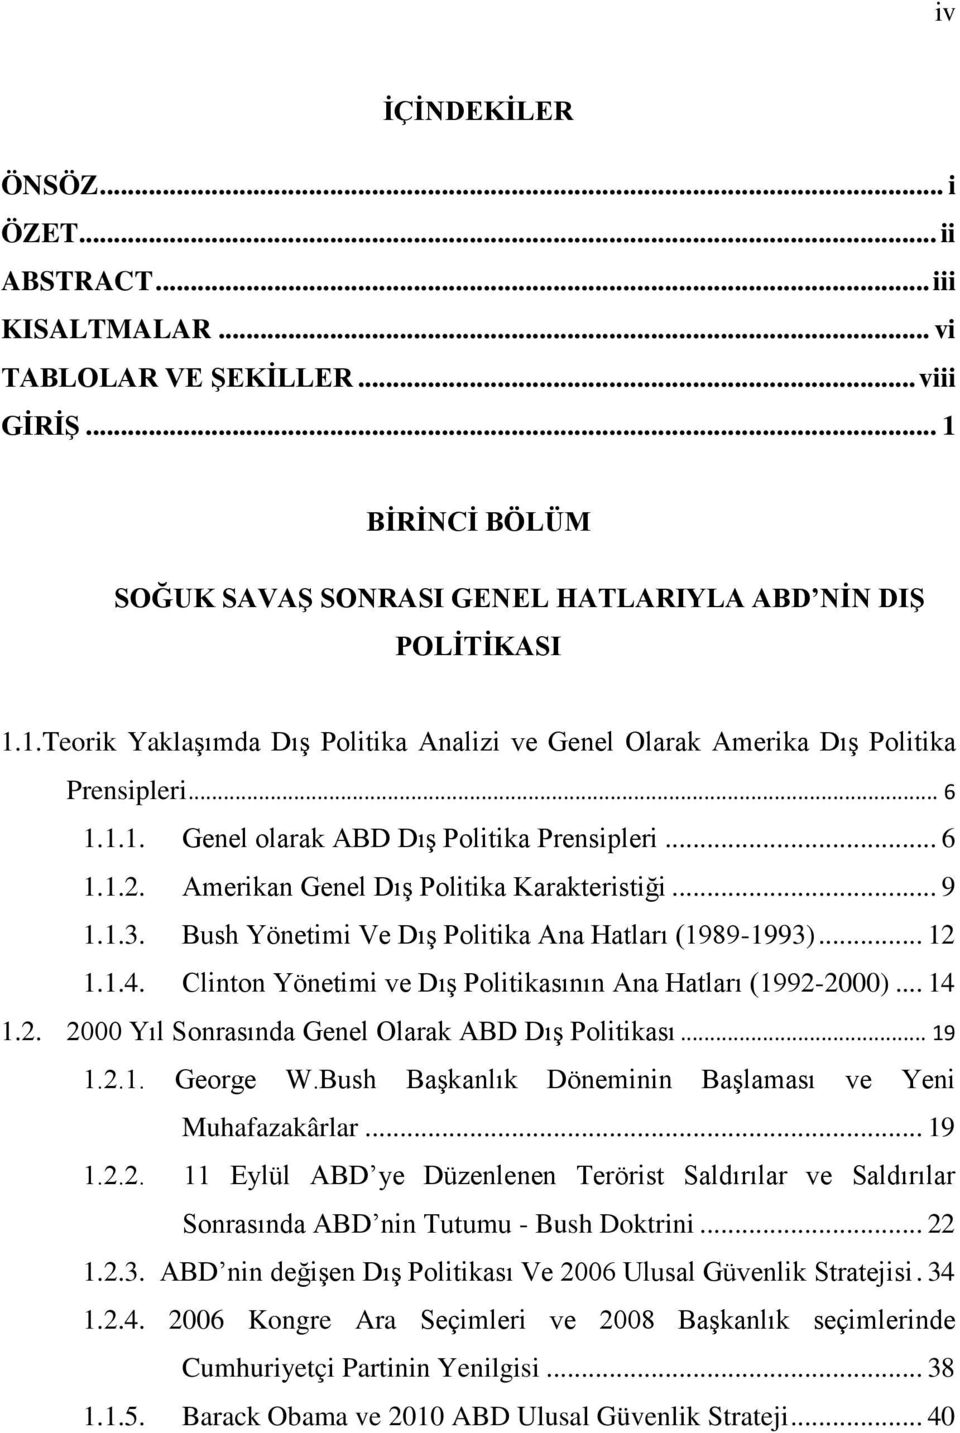 Clinton Yönetimi ve Dış Politikasının Ana Hatları (1992-2000)... 14 1.2. 2000 Yıl Sonrasında Genel Olarak ABD Dış Politikası... 19 1.2.1. George W.